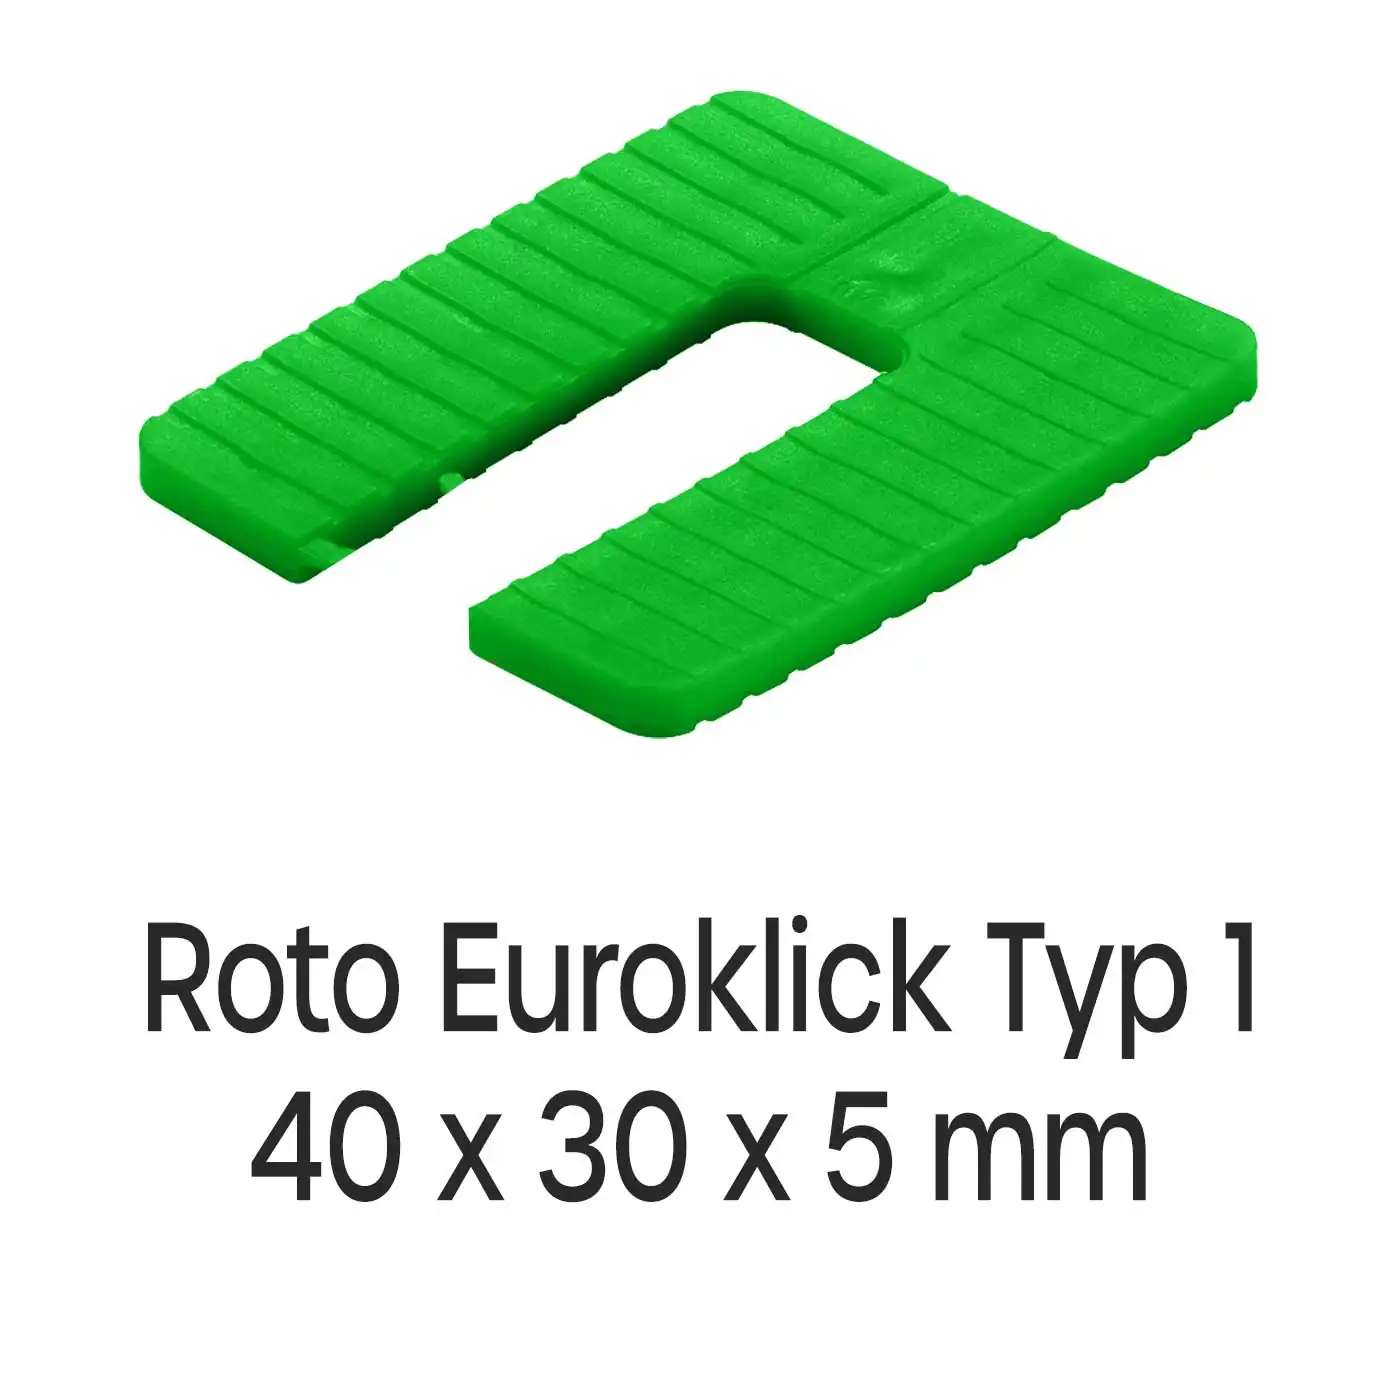 Distanzplatten Roto Euroklick Typ 1 40 x 30 x 5 mm 1000 Stück